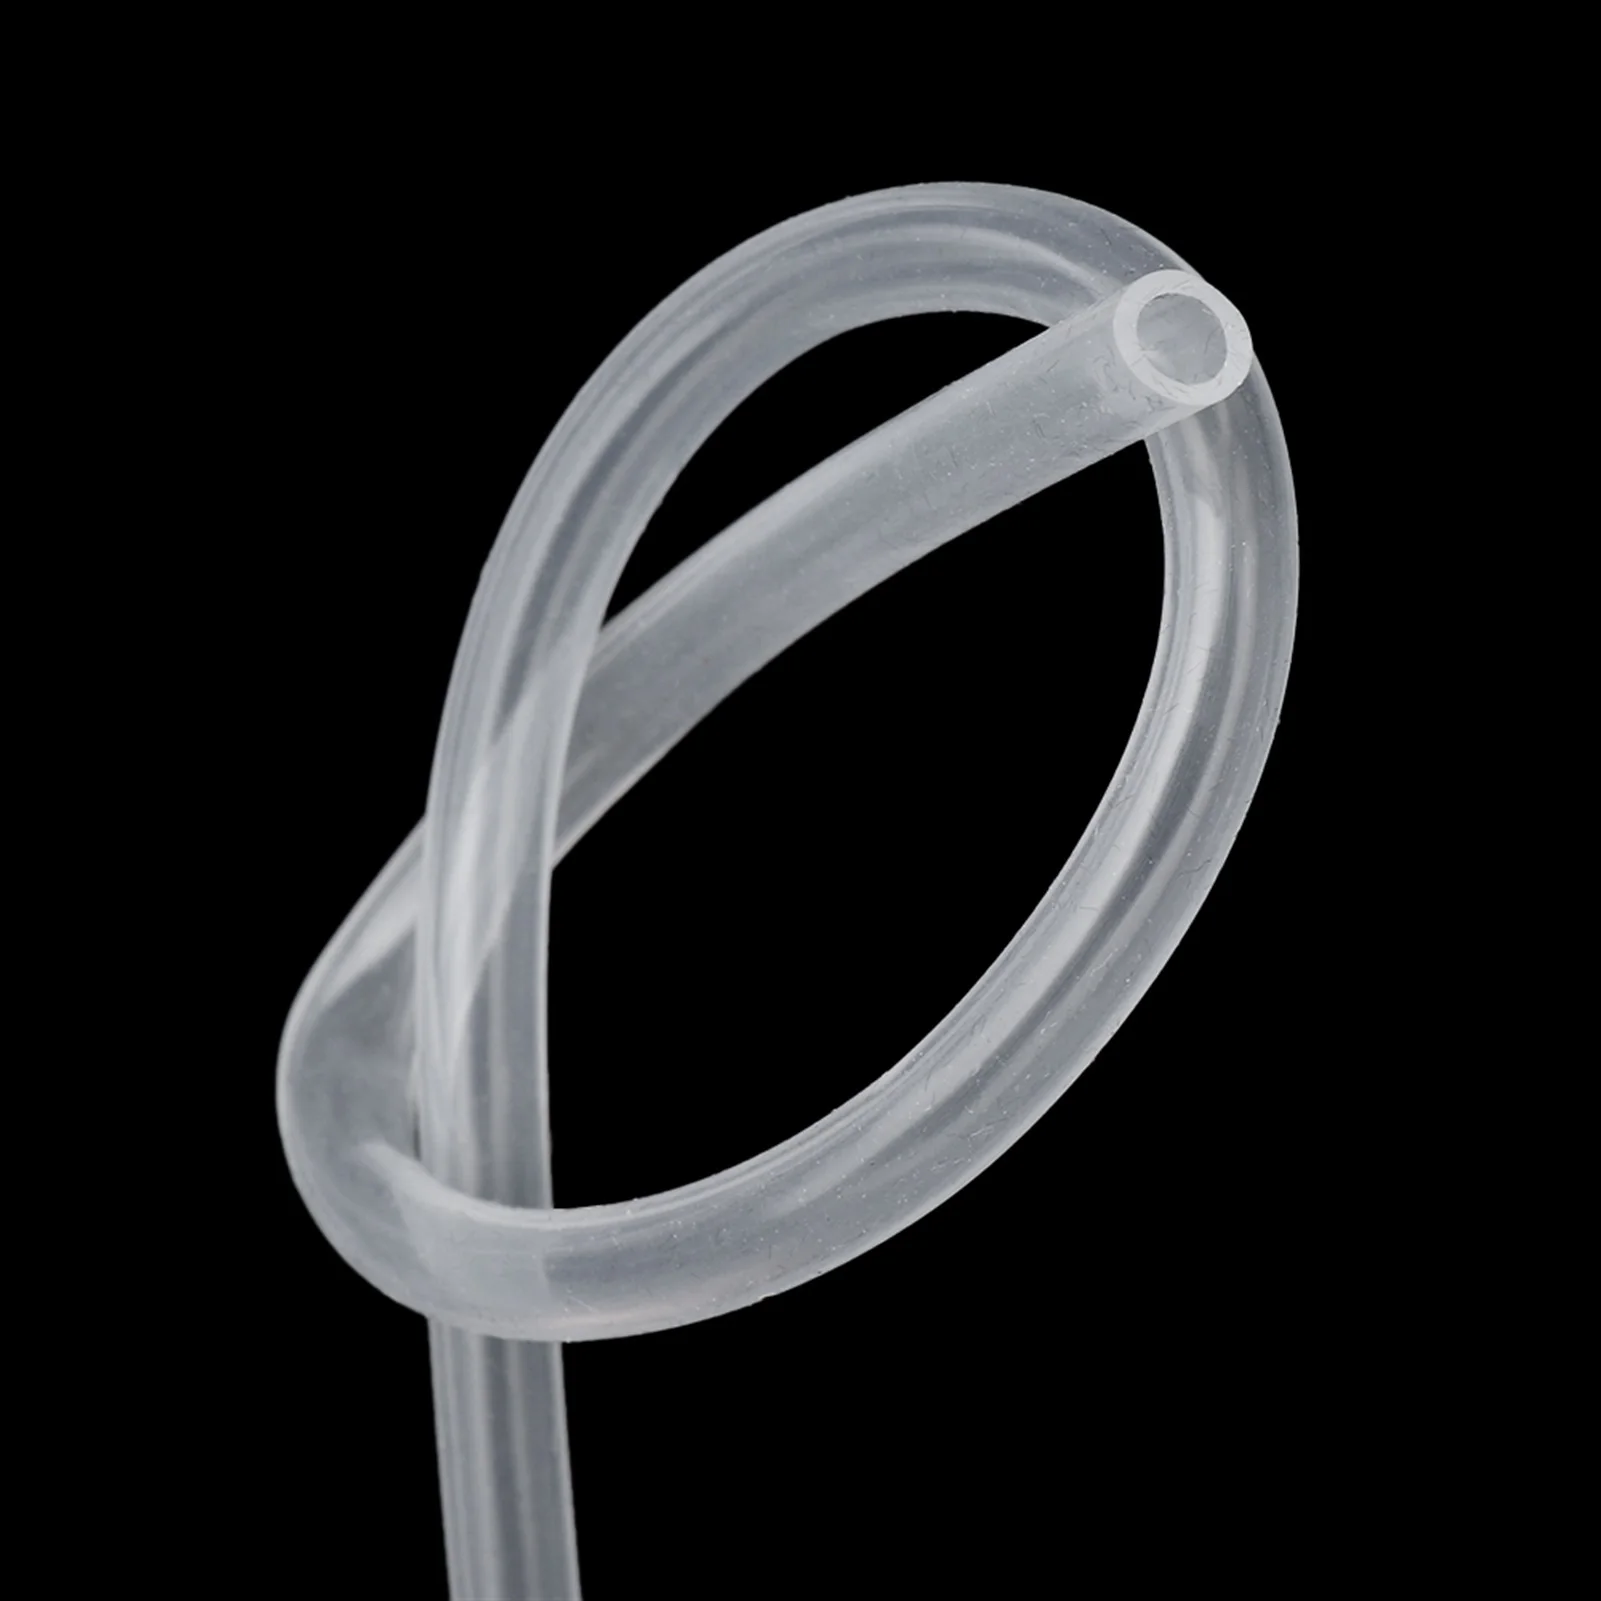 

Гибкий прозрачный силиконовый резиновый шланг, диаметр 2/3/4/5/6/7/8/10 мм, силиконовая трубка, шланг для молока, пивная трубка, 1 метр